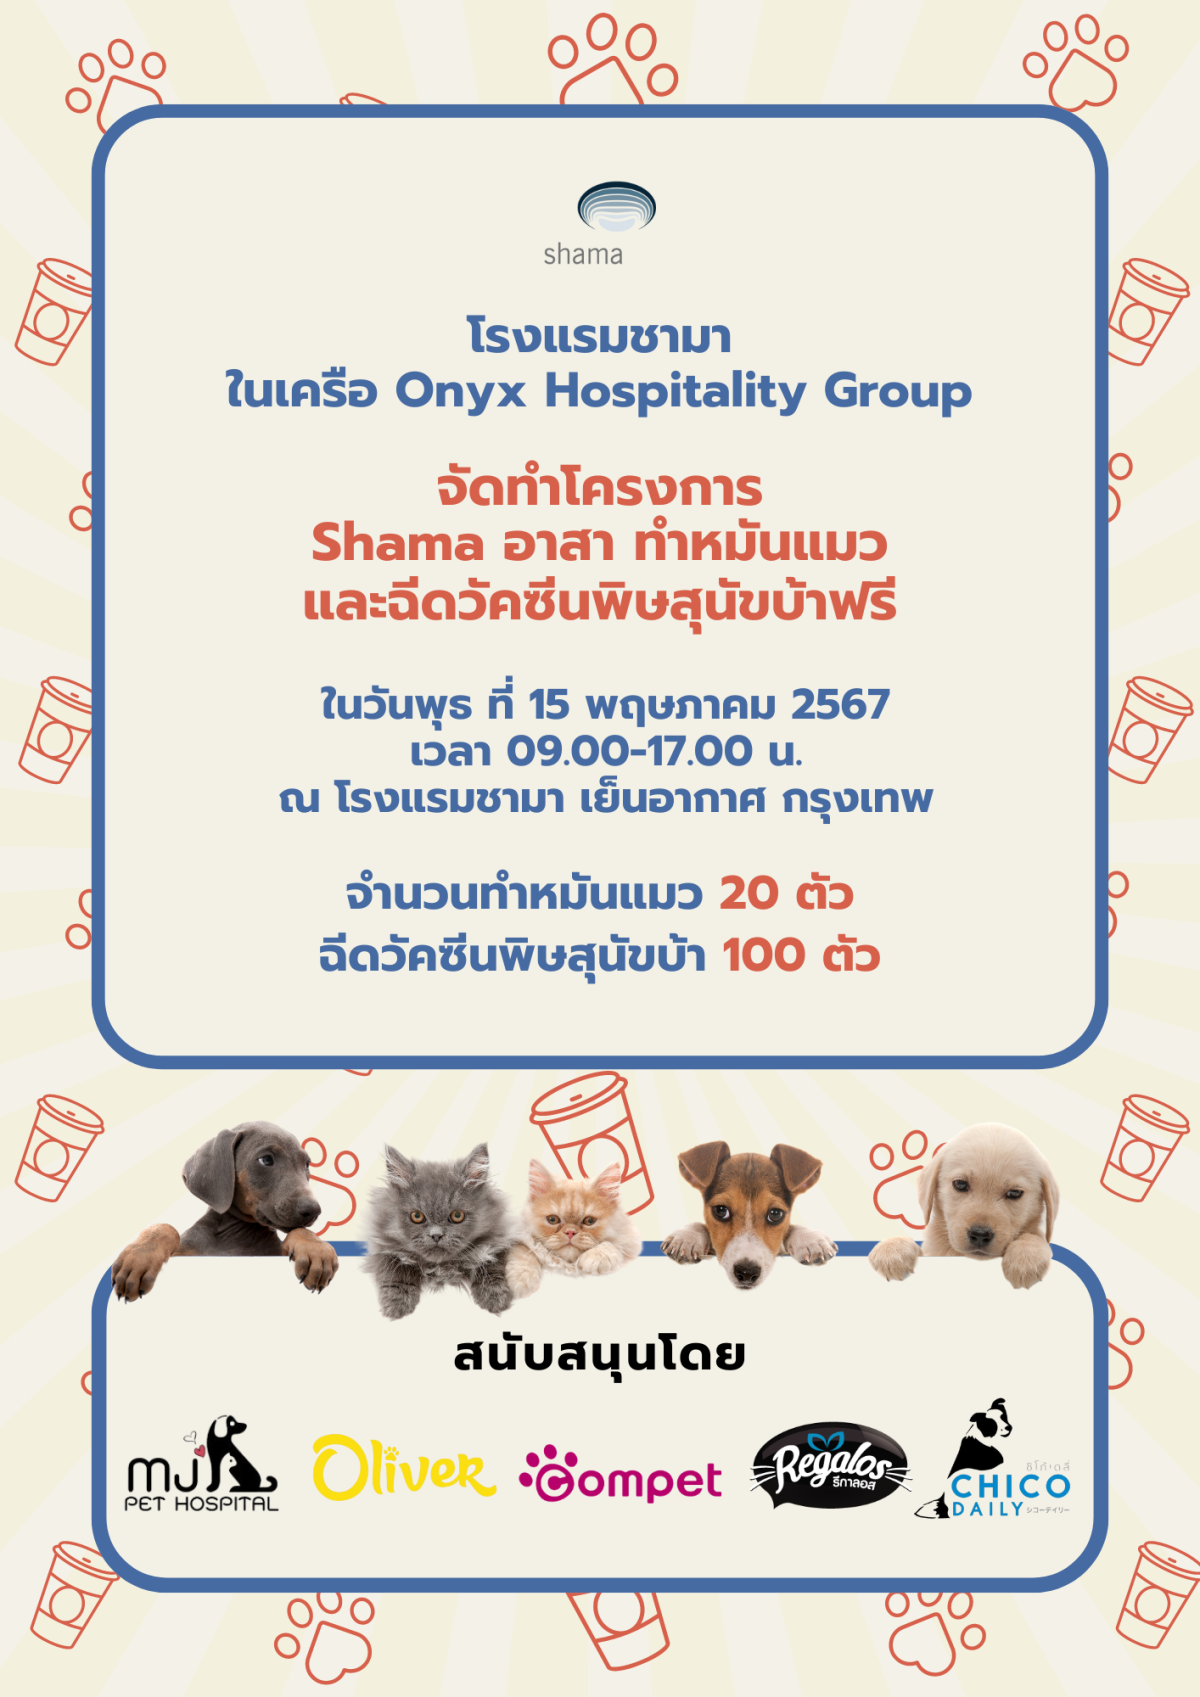 Shama Yen-Akat Bangkok โรงแรม Pet Friendly ย่านสาทร เปิดโครงการ "Shama อาสา ทำหมันแมวและฉีดวัคซีนพิษสุนัขบ้าฟรี" ให้แก่ชุมชนในพื้นที่ใกล้เคียง